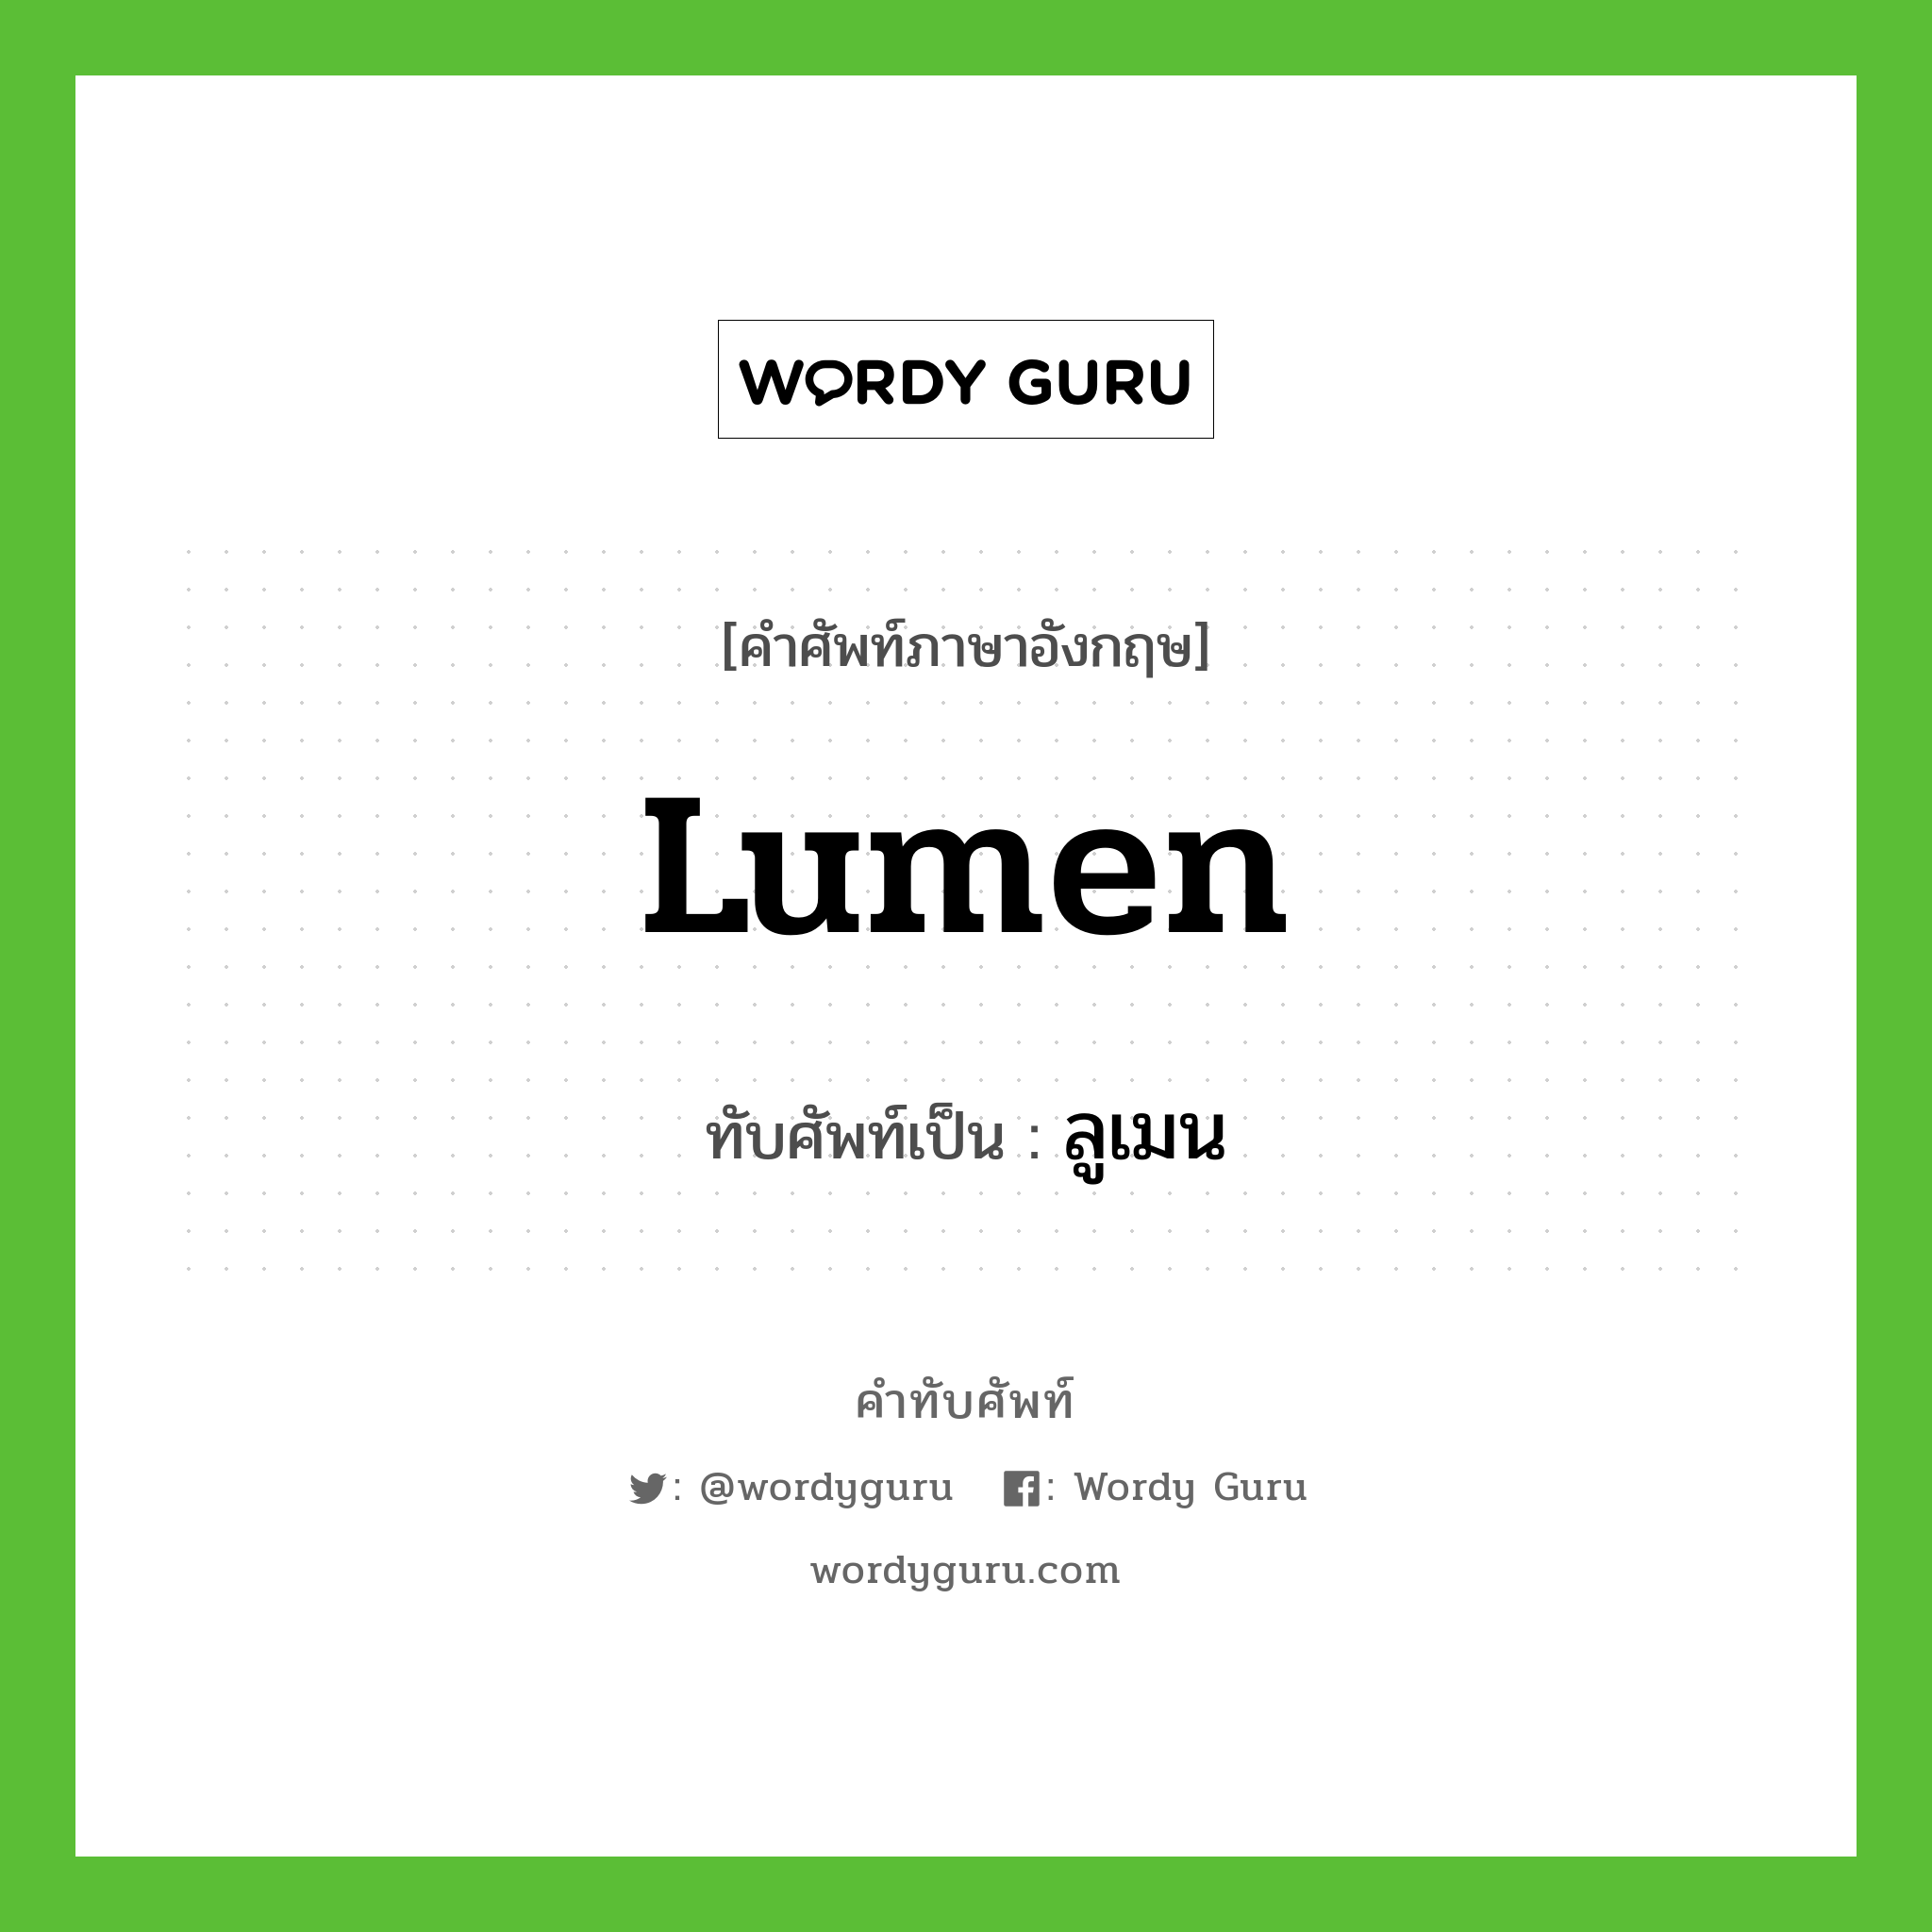 lumen เขียนเป็นคำไทยว่าอะไร?, คำศัพท์ภาษาอังกฤษ lumen ทับศัพท์เป็น ลูเมน